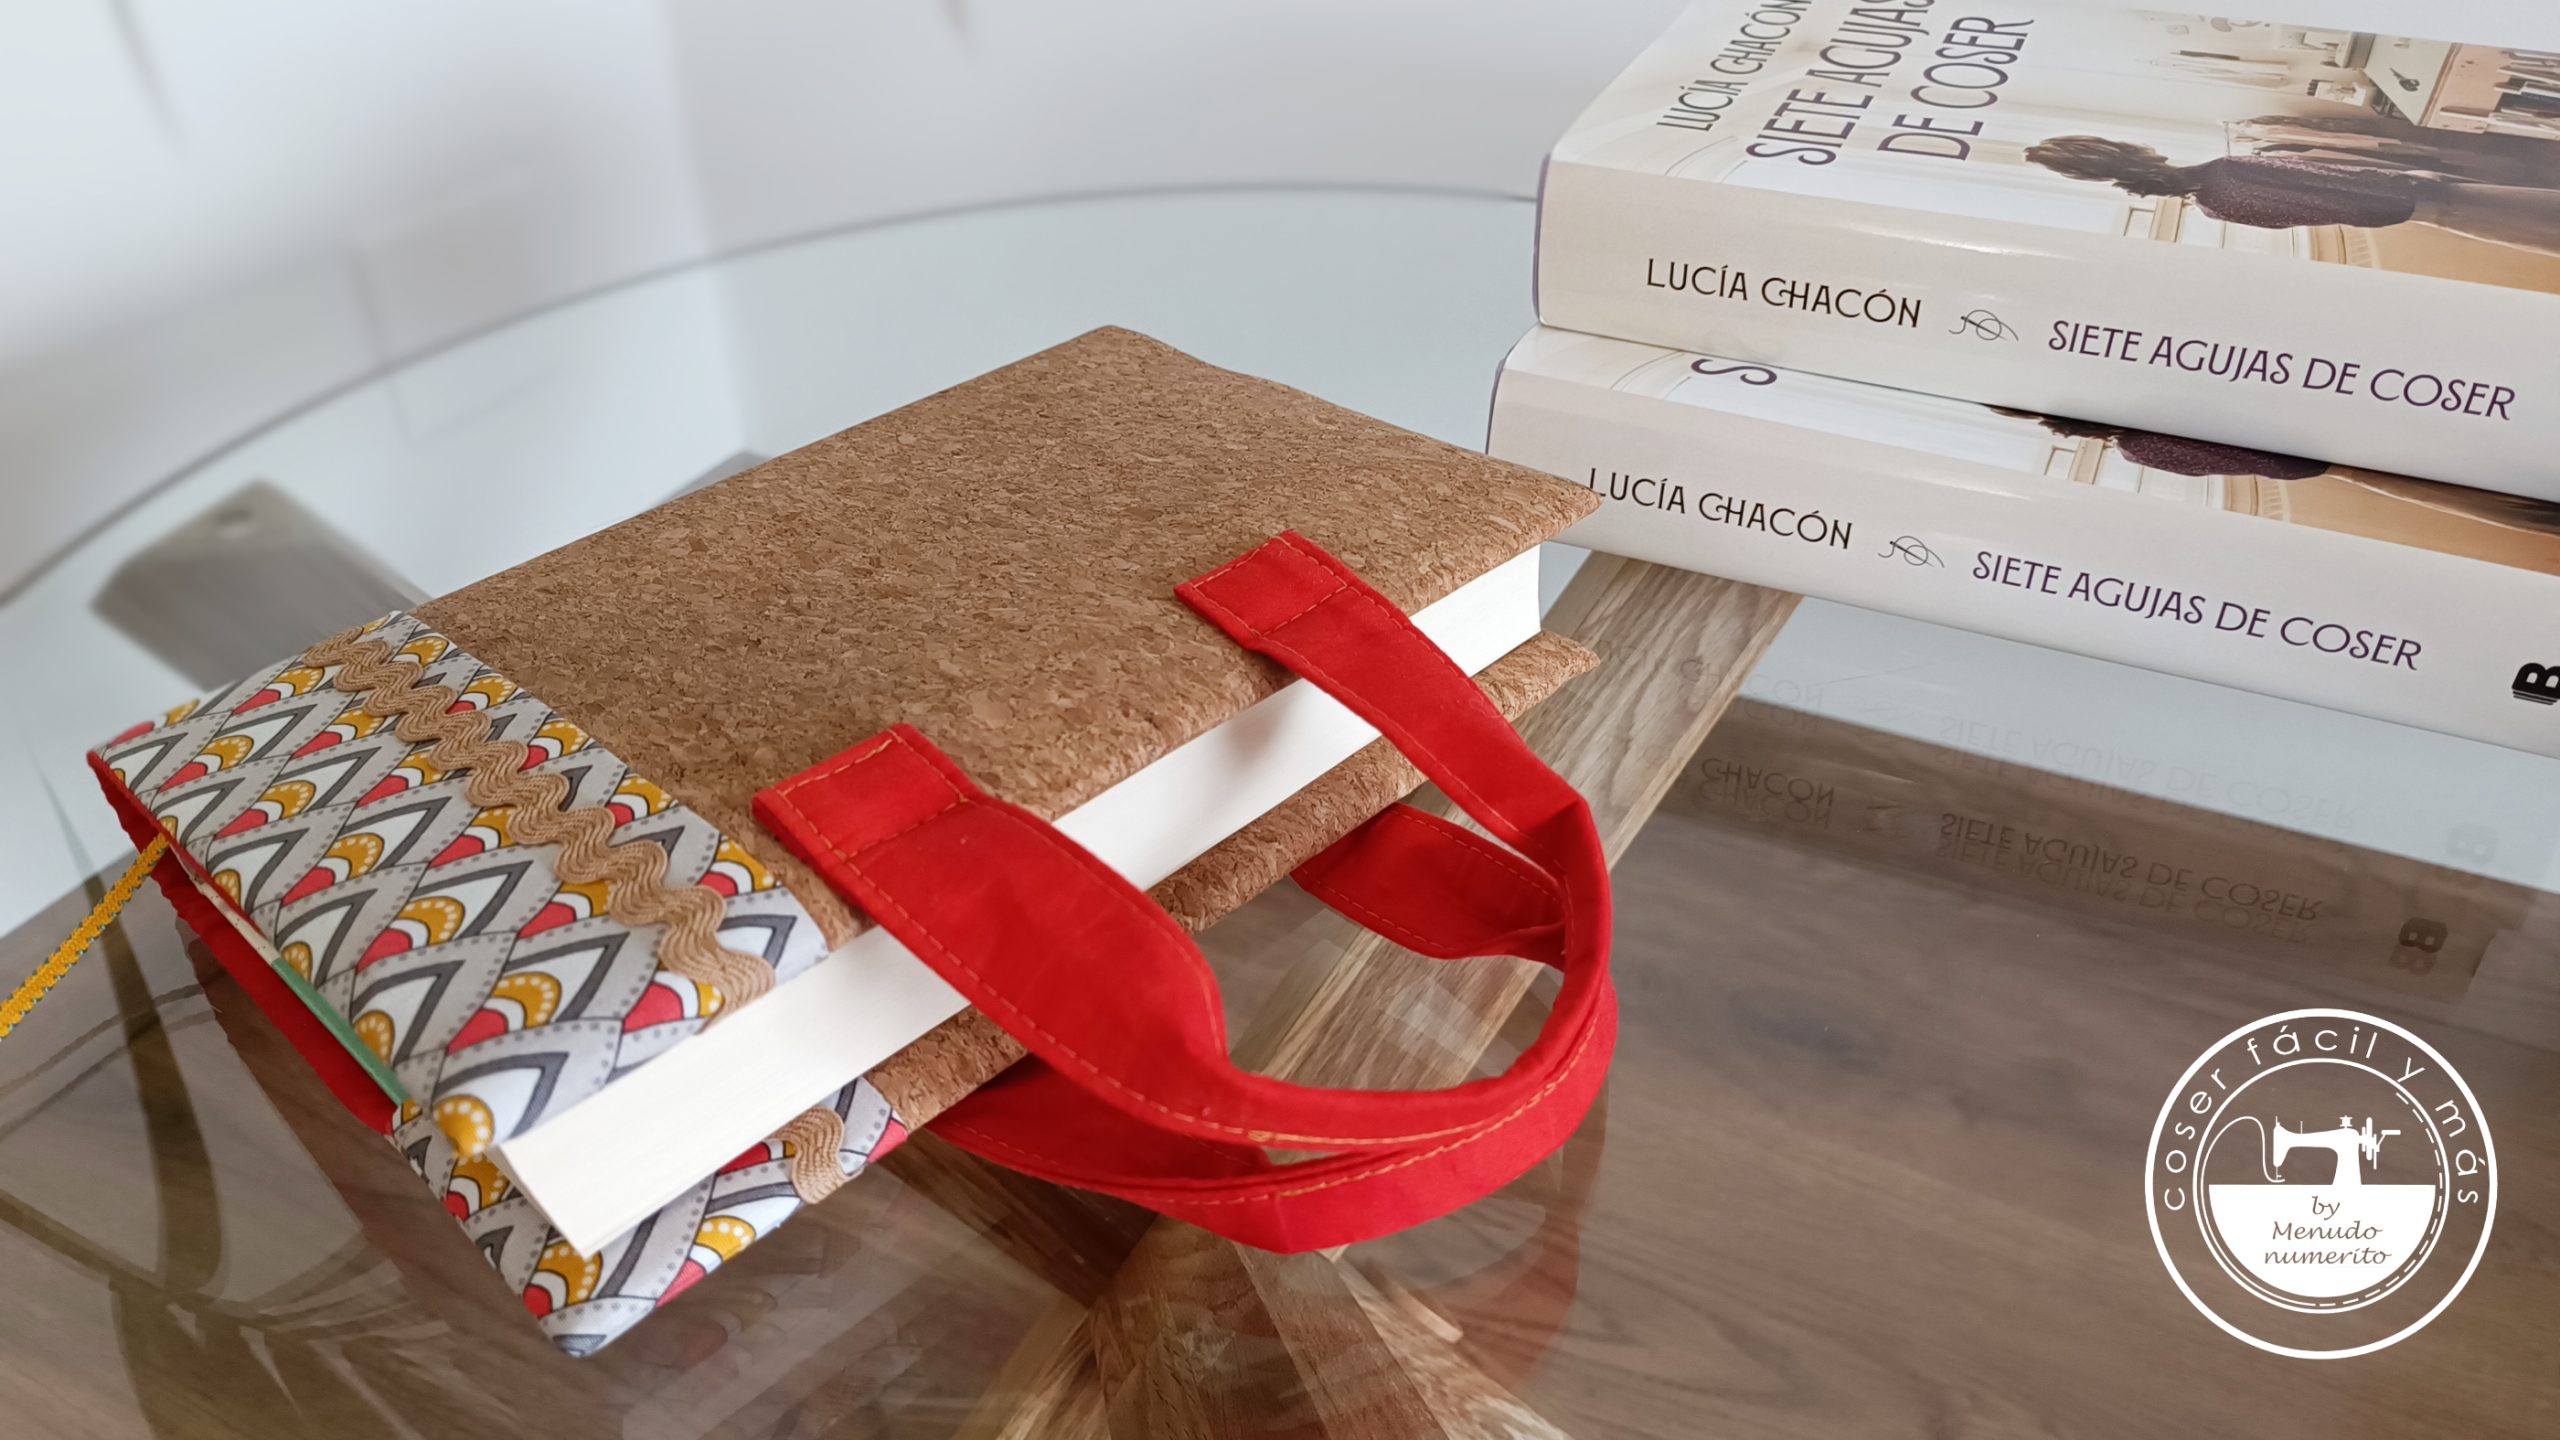 Funda de tela para libros (ajustable) – Tutorial de costura [vídeo]